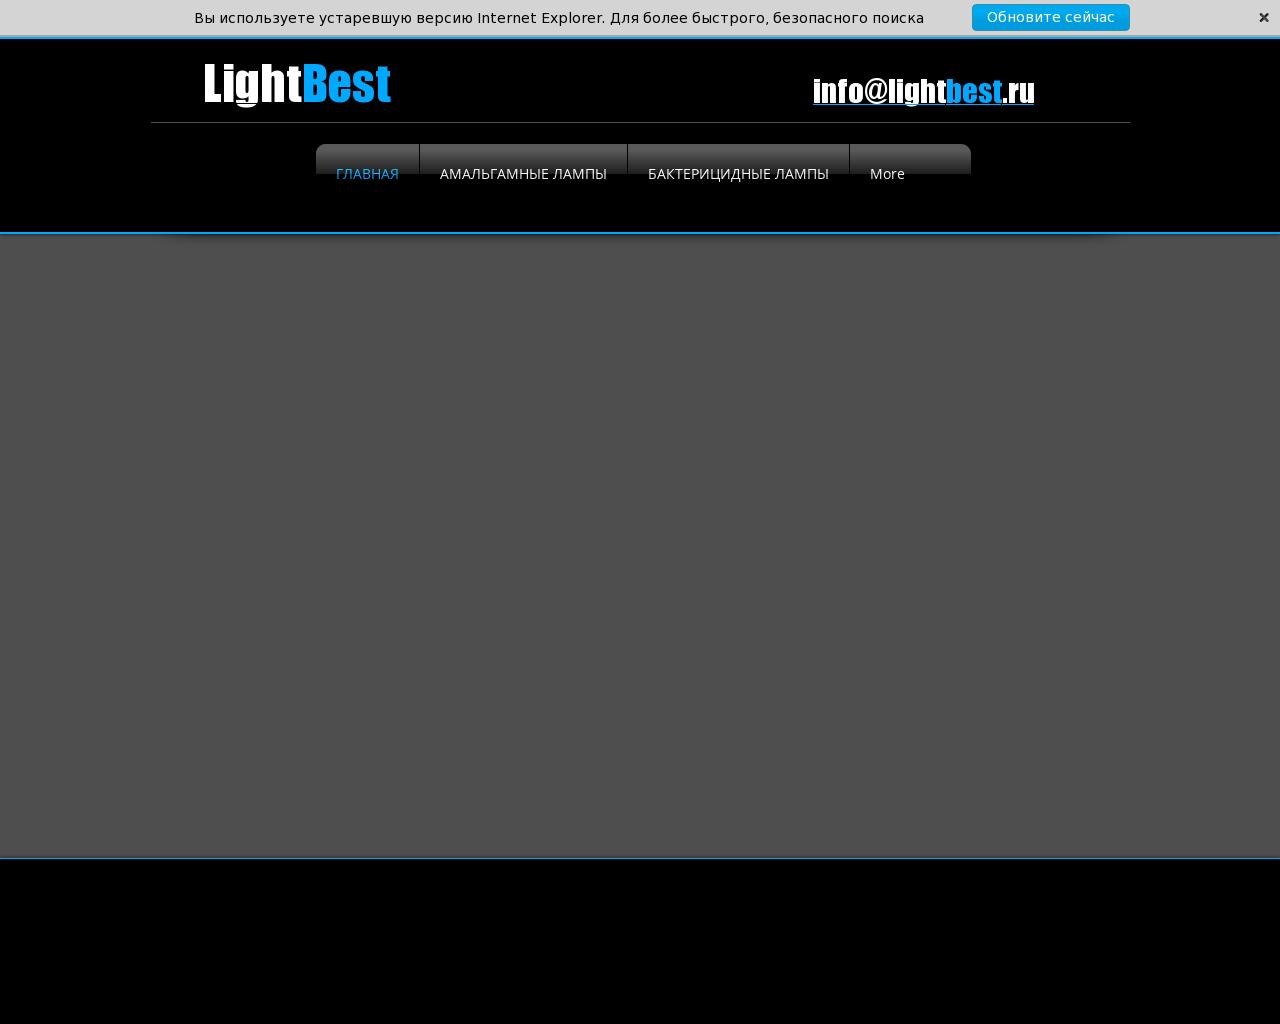 Изображение сайта lightbest.ru в разрешении 1280x1024